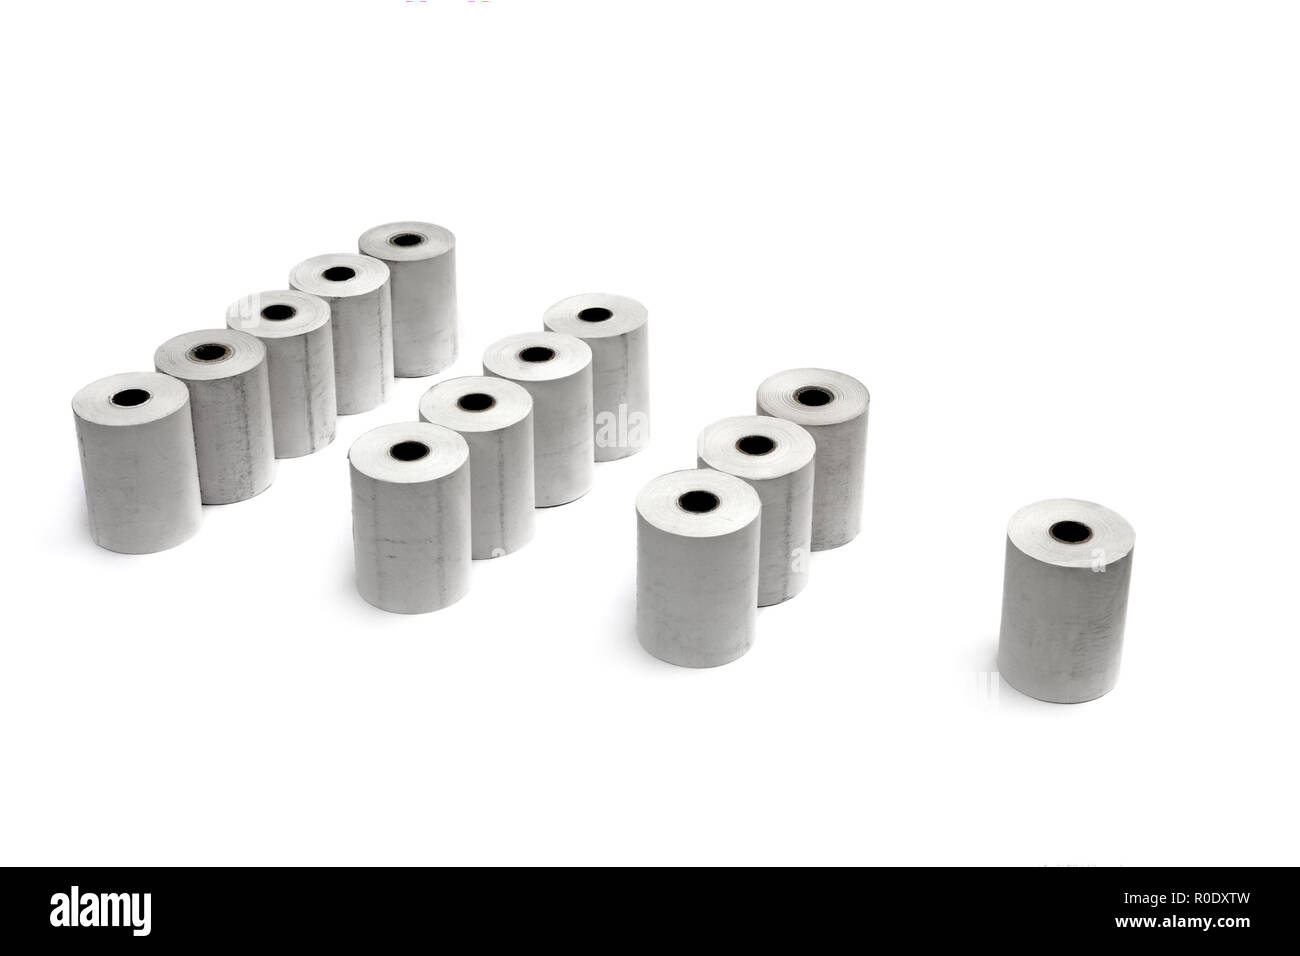 Gruppi di rotoli di carta termica per stampanti e registratori di cassa isolate su sfondo bianco Foto Stock